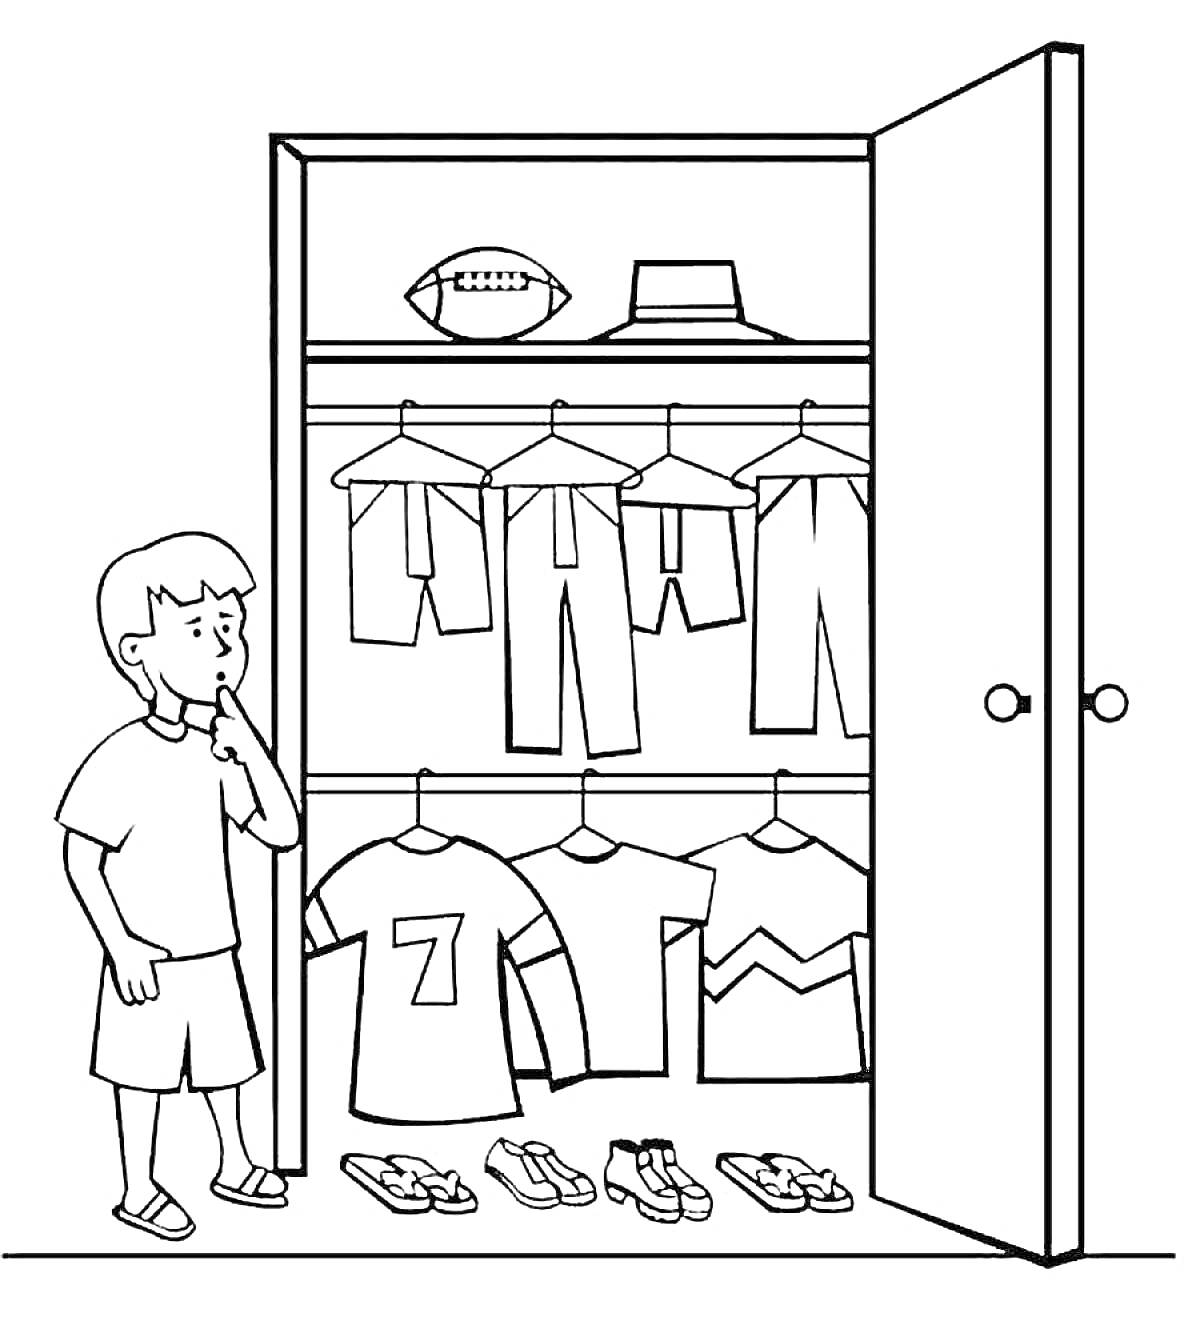 Раскраска Мальчик возле открытого шкафа с одеждой, обувью, мячом и шляпой